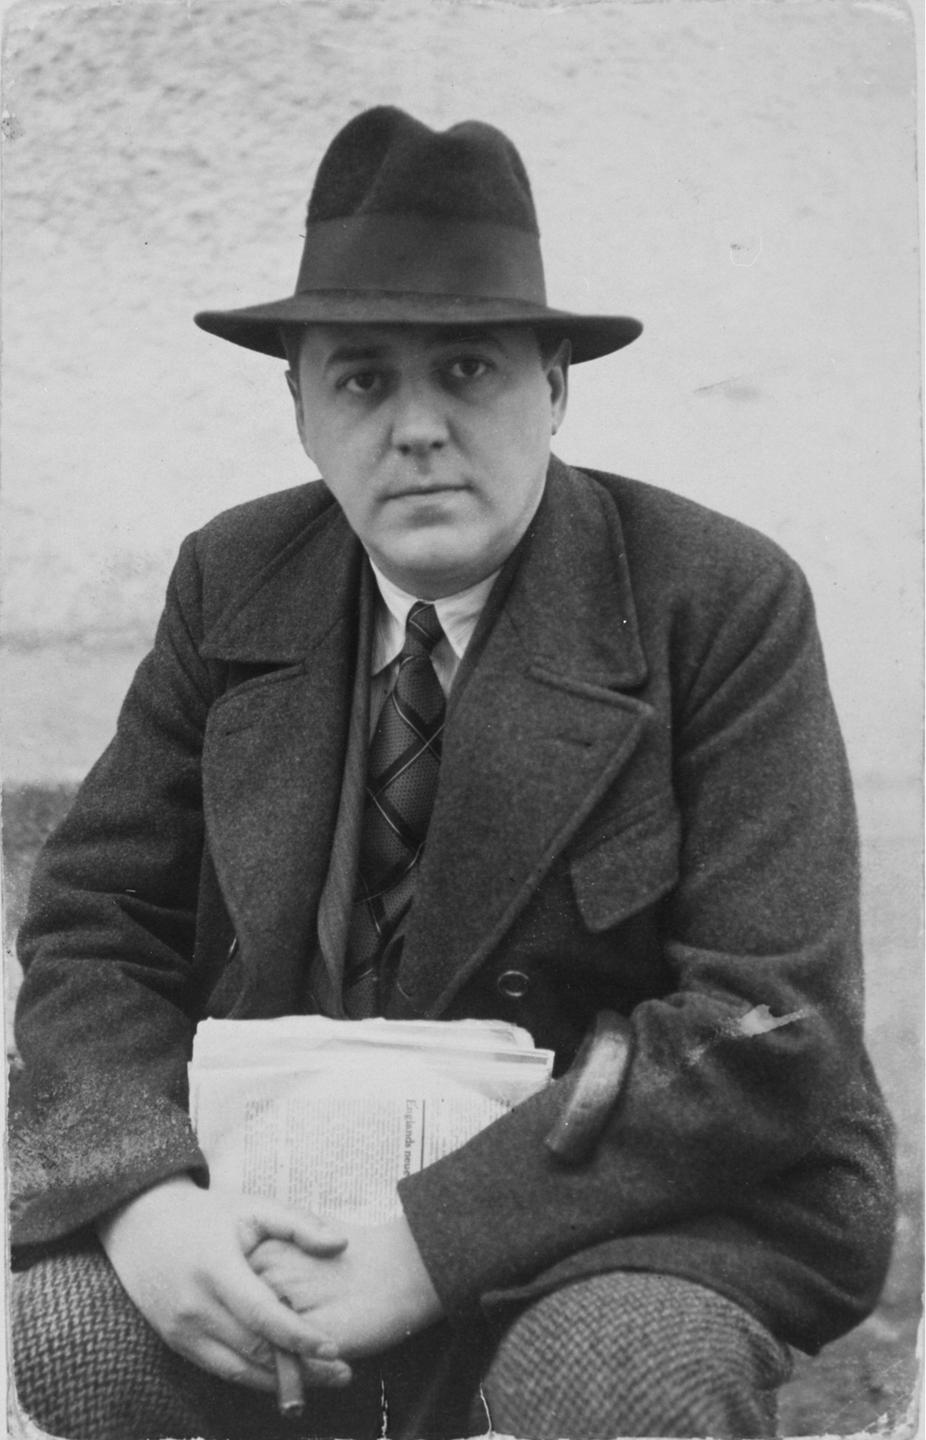 Ödön von Horvath in einer schwarzweiss Aufnahme mit Hut und Zeitung in der Hand, 1938.